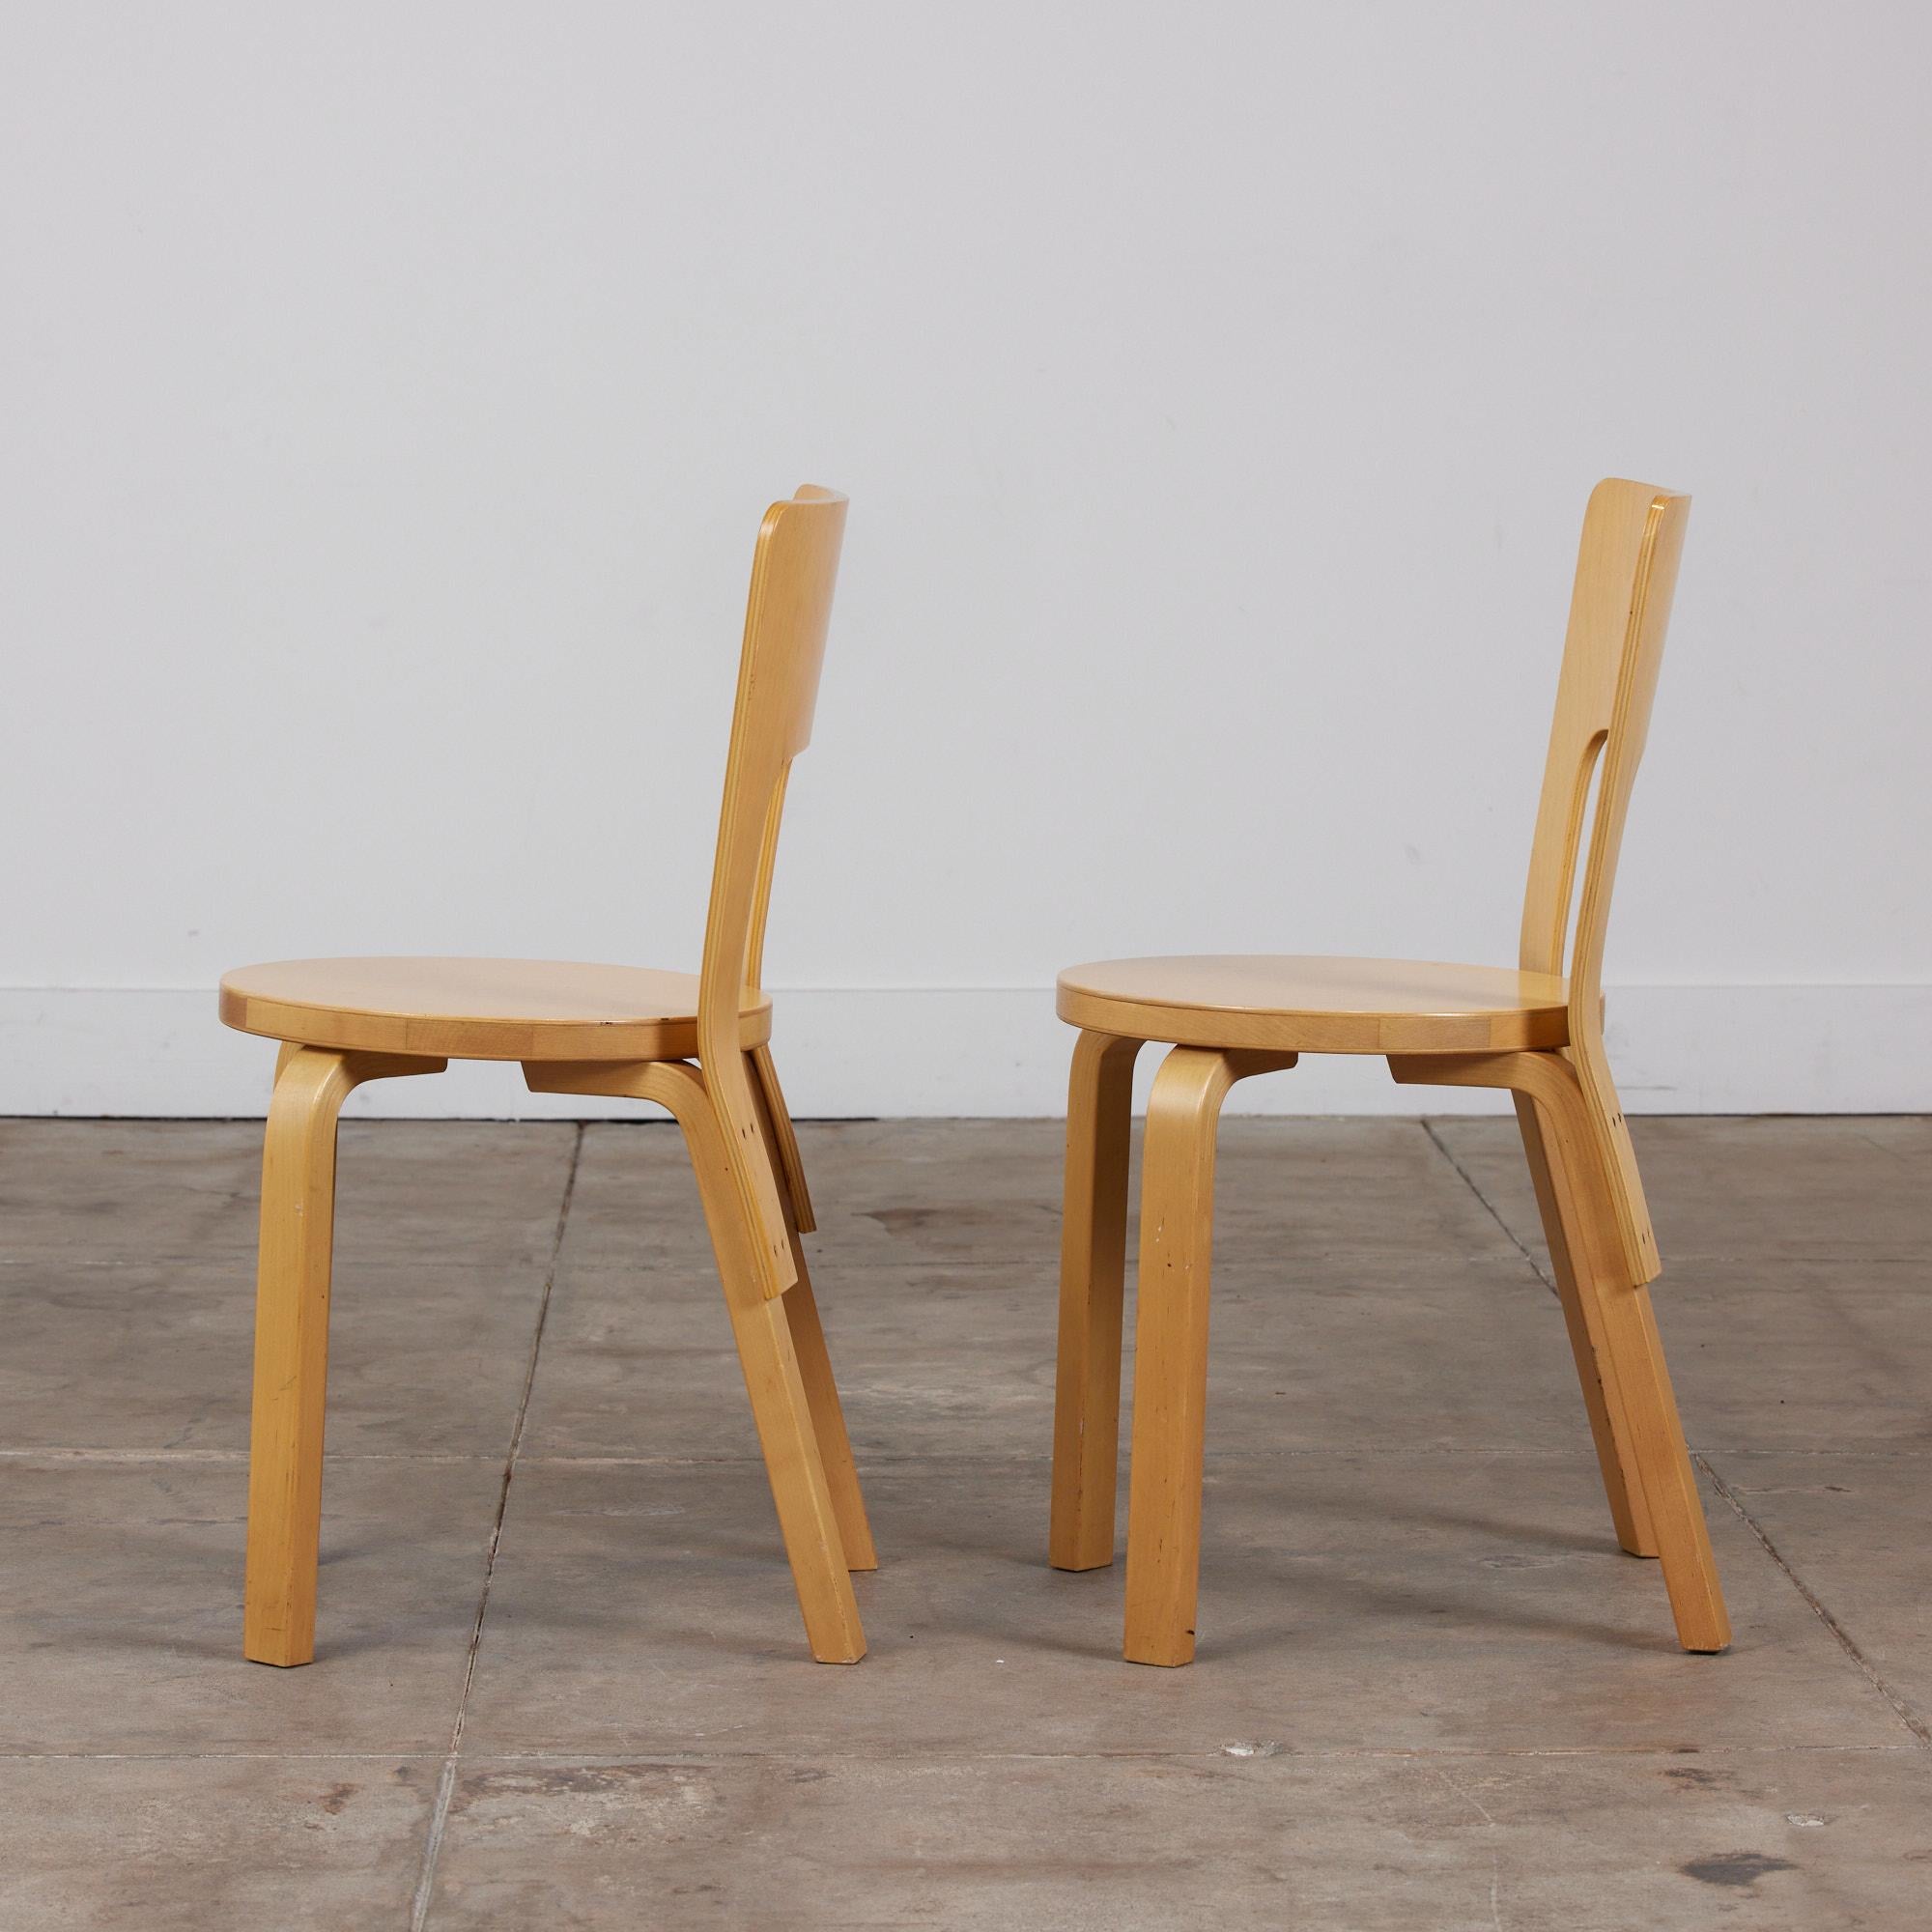 Swedish Alvar Aalto Model 66 Dining Chair for Artek